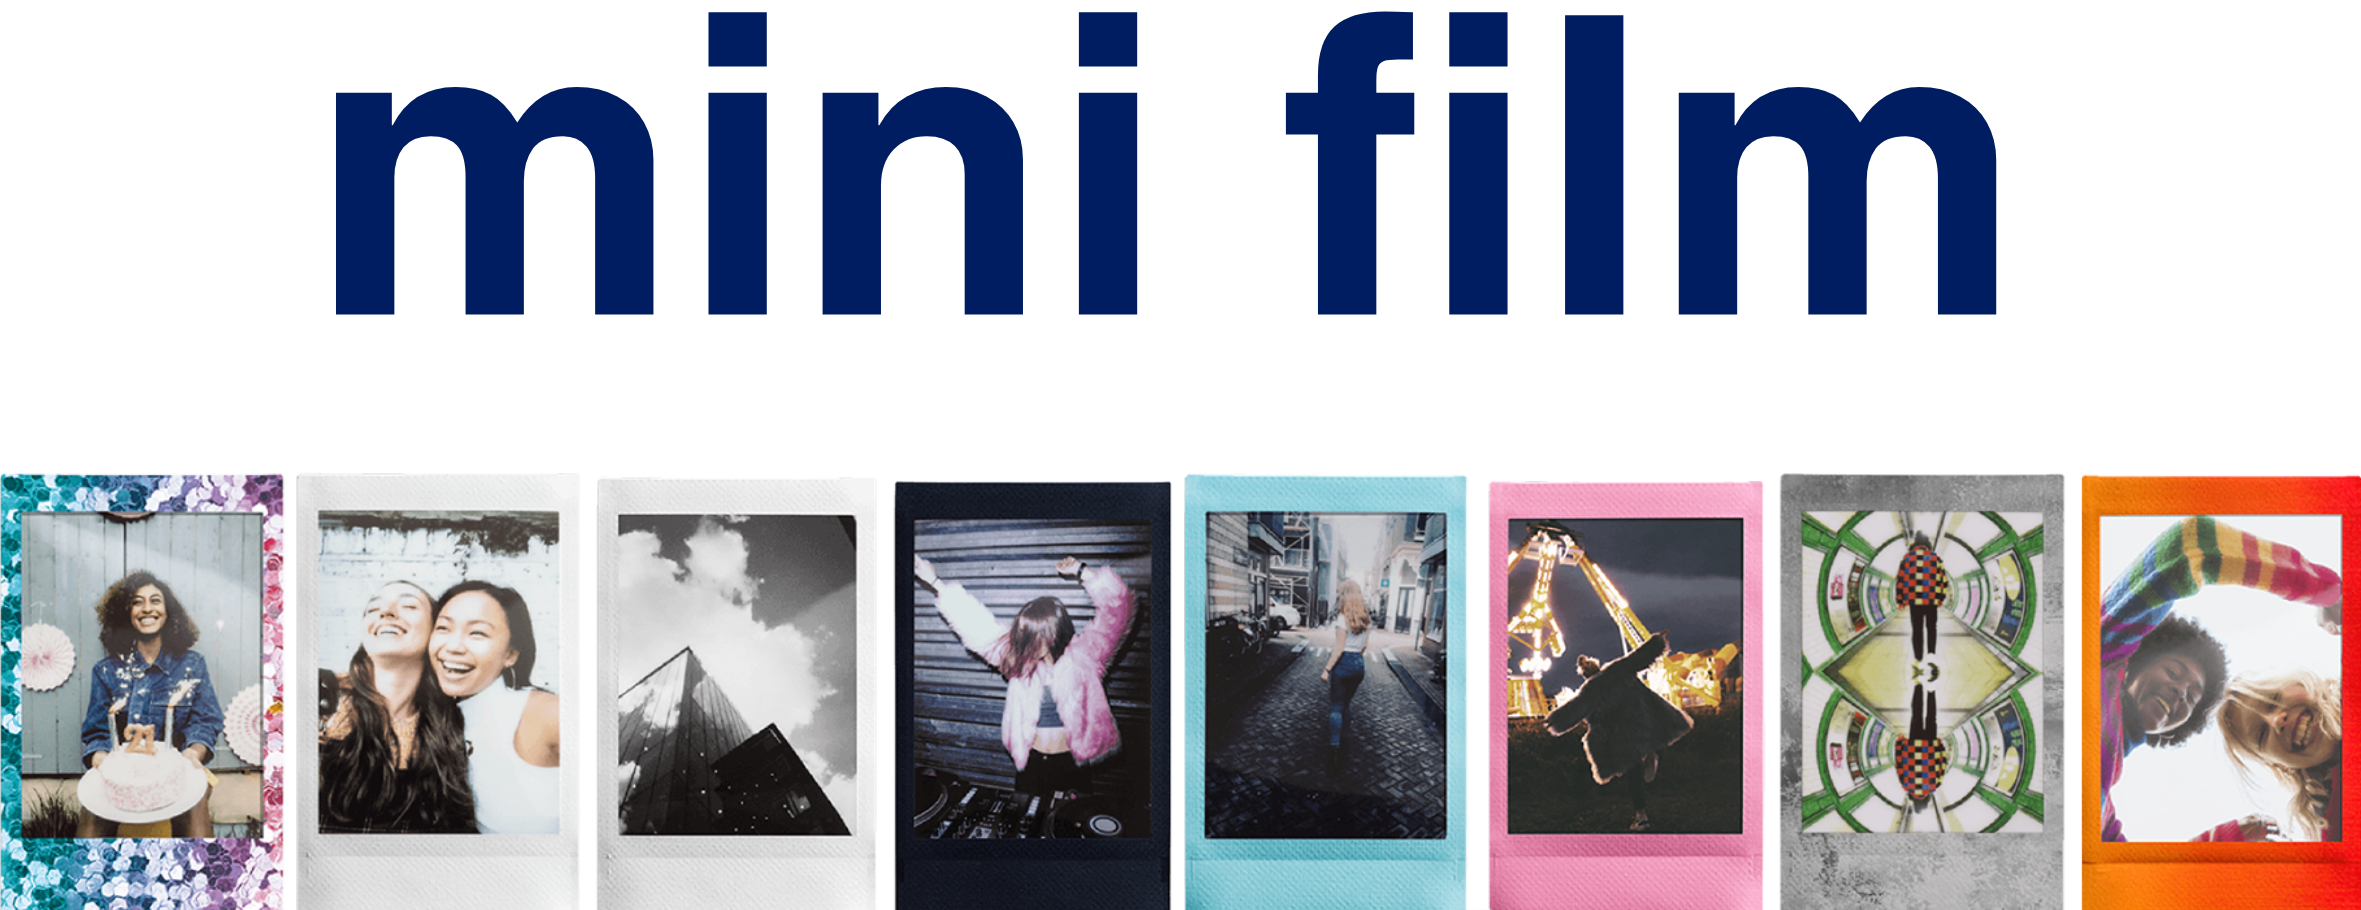 Fujifilm Instax Mini Film (60 Pack) - JB Hi-Fi